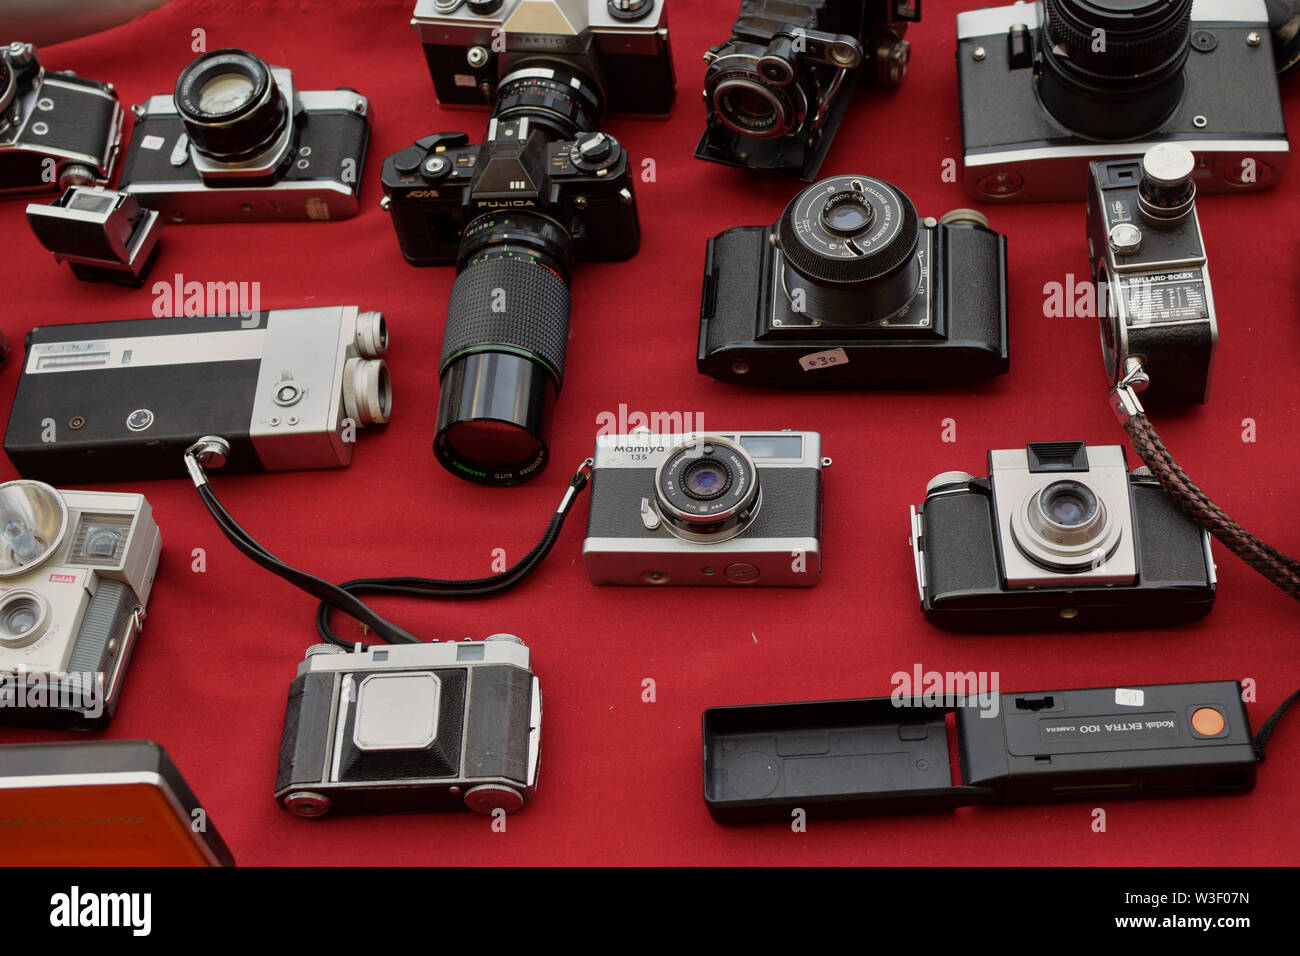 Caméra hi8 Banque d'images détourées - Alamy